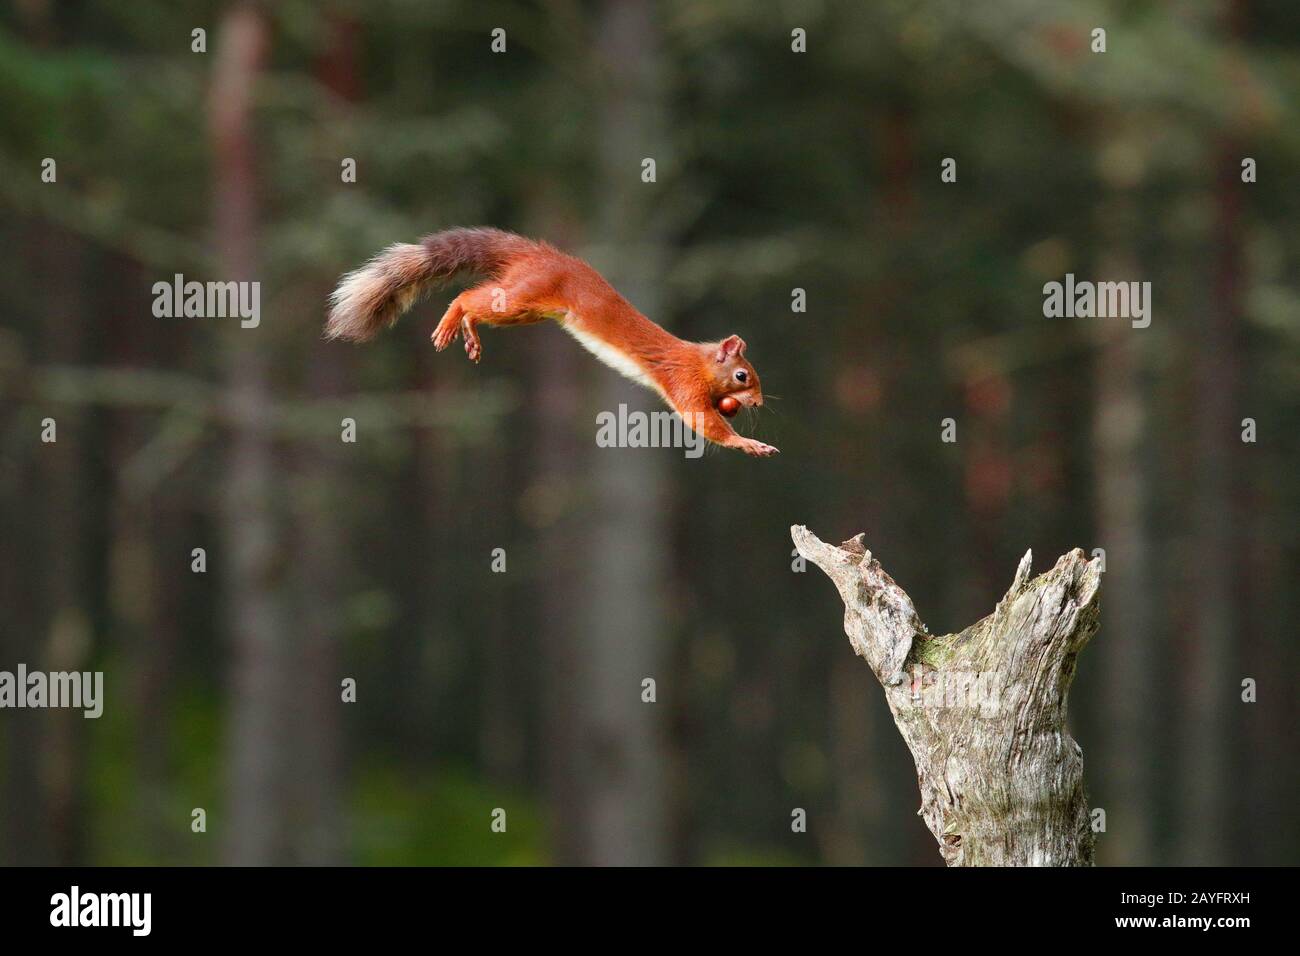 Ardilla roja europea, ardilla roja euroasiática (Sciurus vulgaris), saltando sobre un tocón de árbol muerto con una avellana en la boca, vista lateral, Suiza Foto de stock